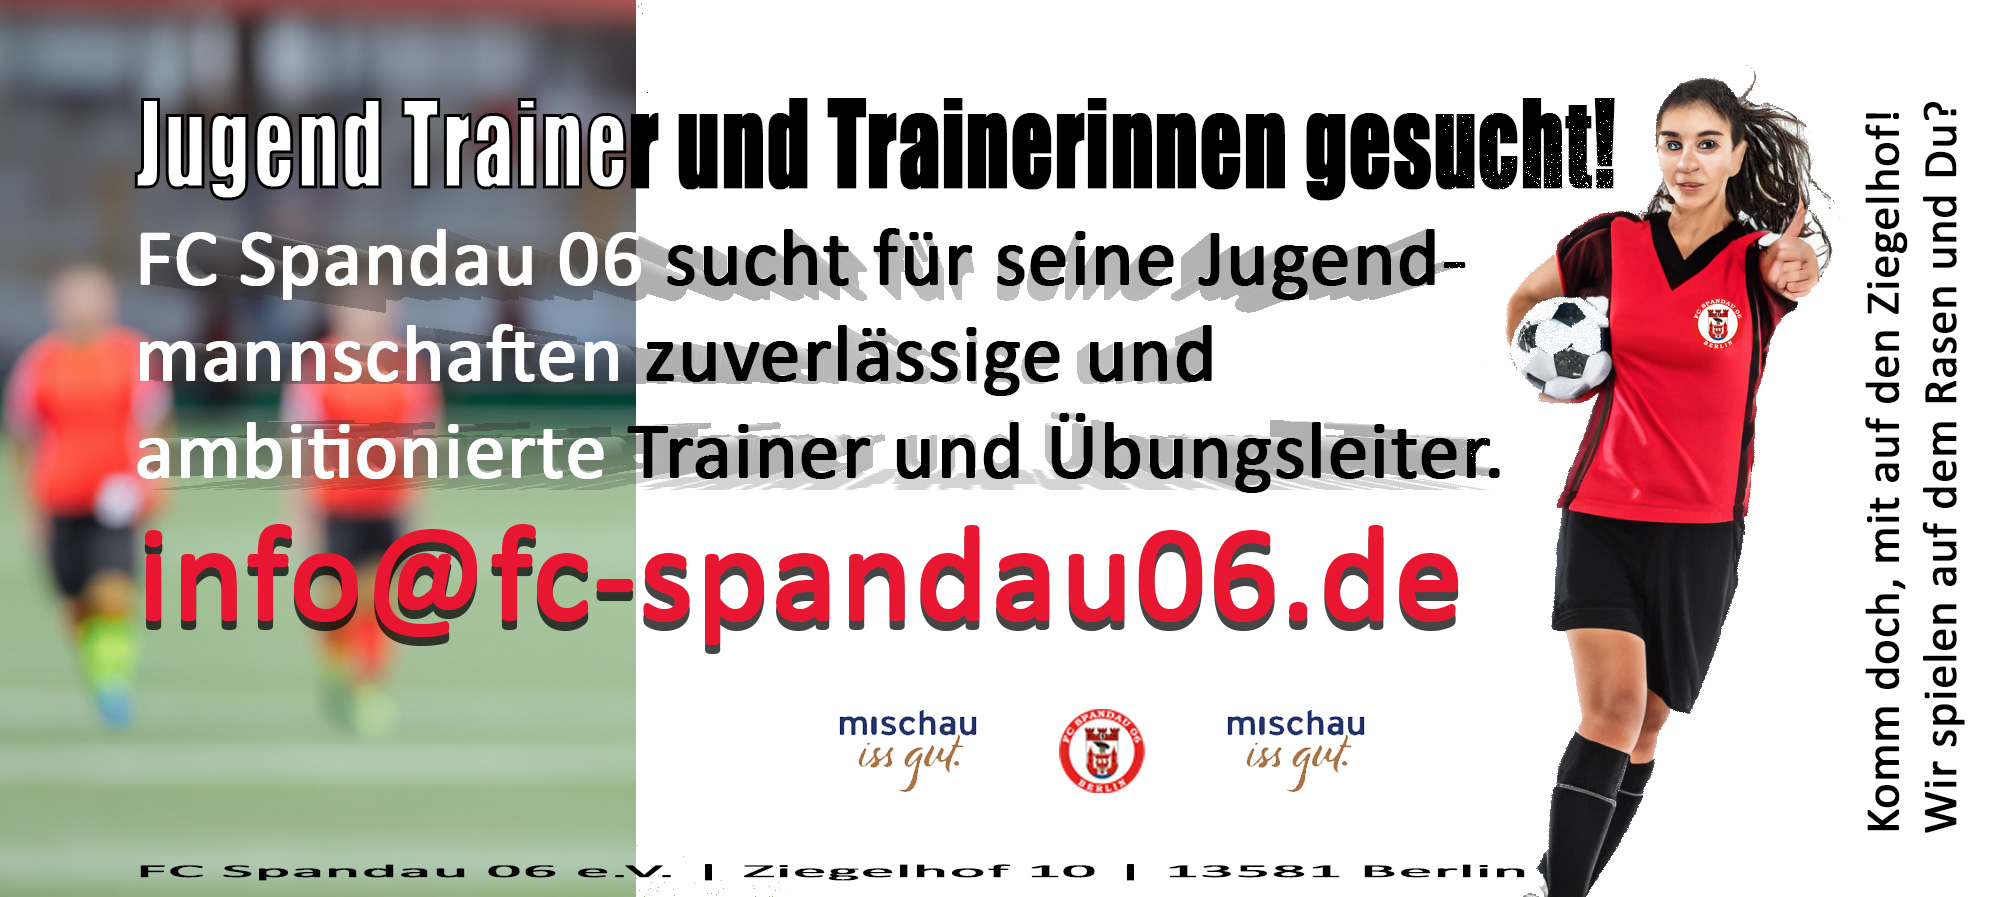 Der FC Spandau 06 sucht